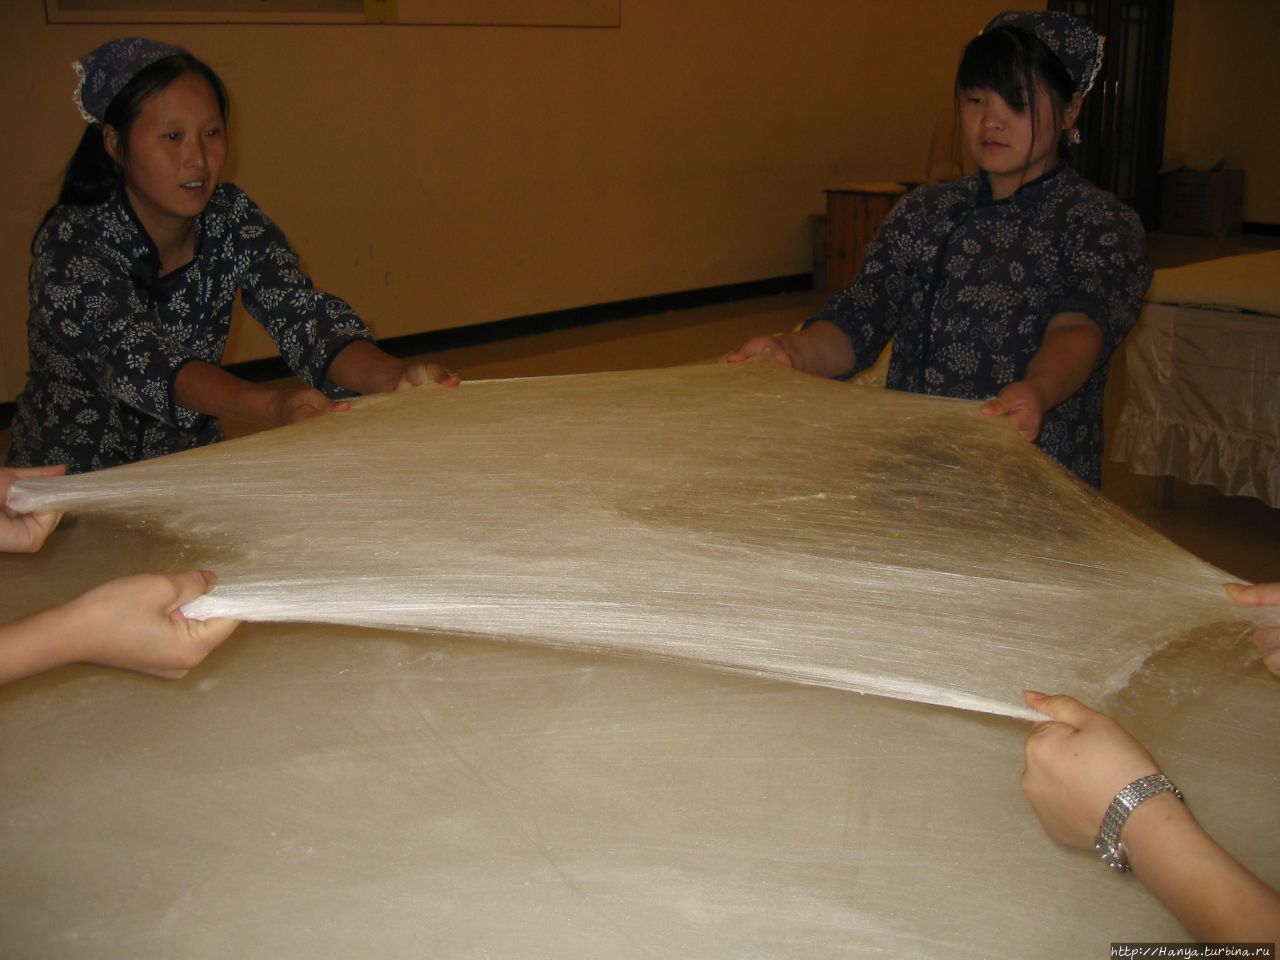 Шелковая фабрика. Изготовление шелкового одеяла Пекин, Китай